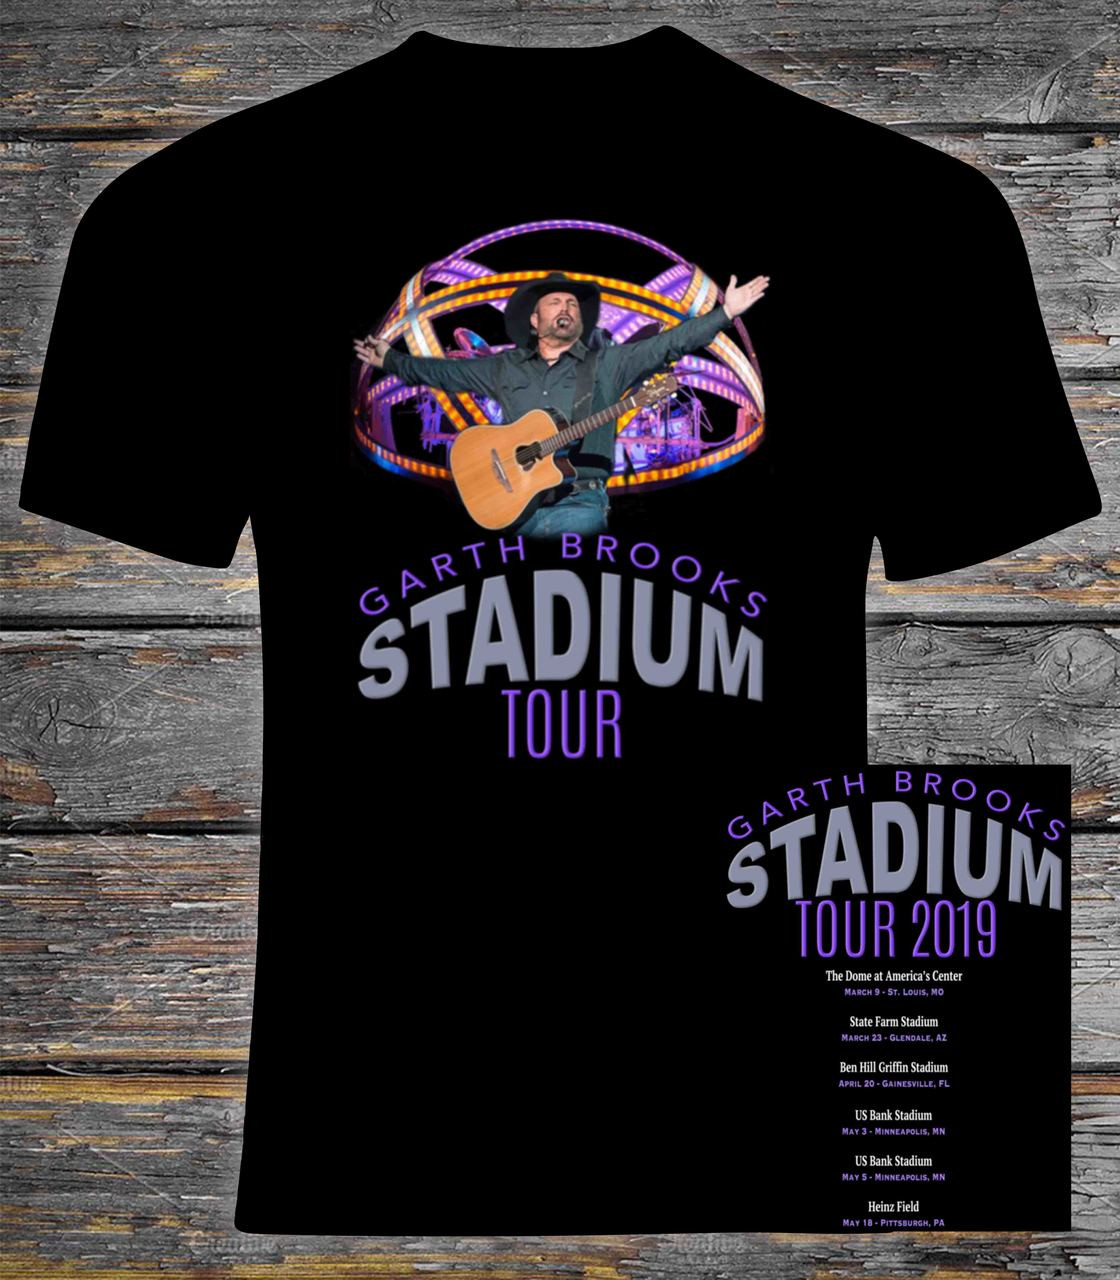 Garth Brooks 2019 Stadium Tour t shirt 